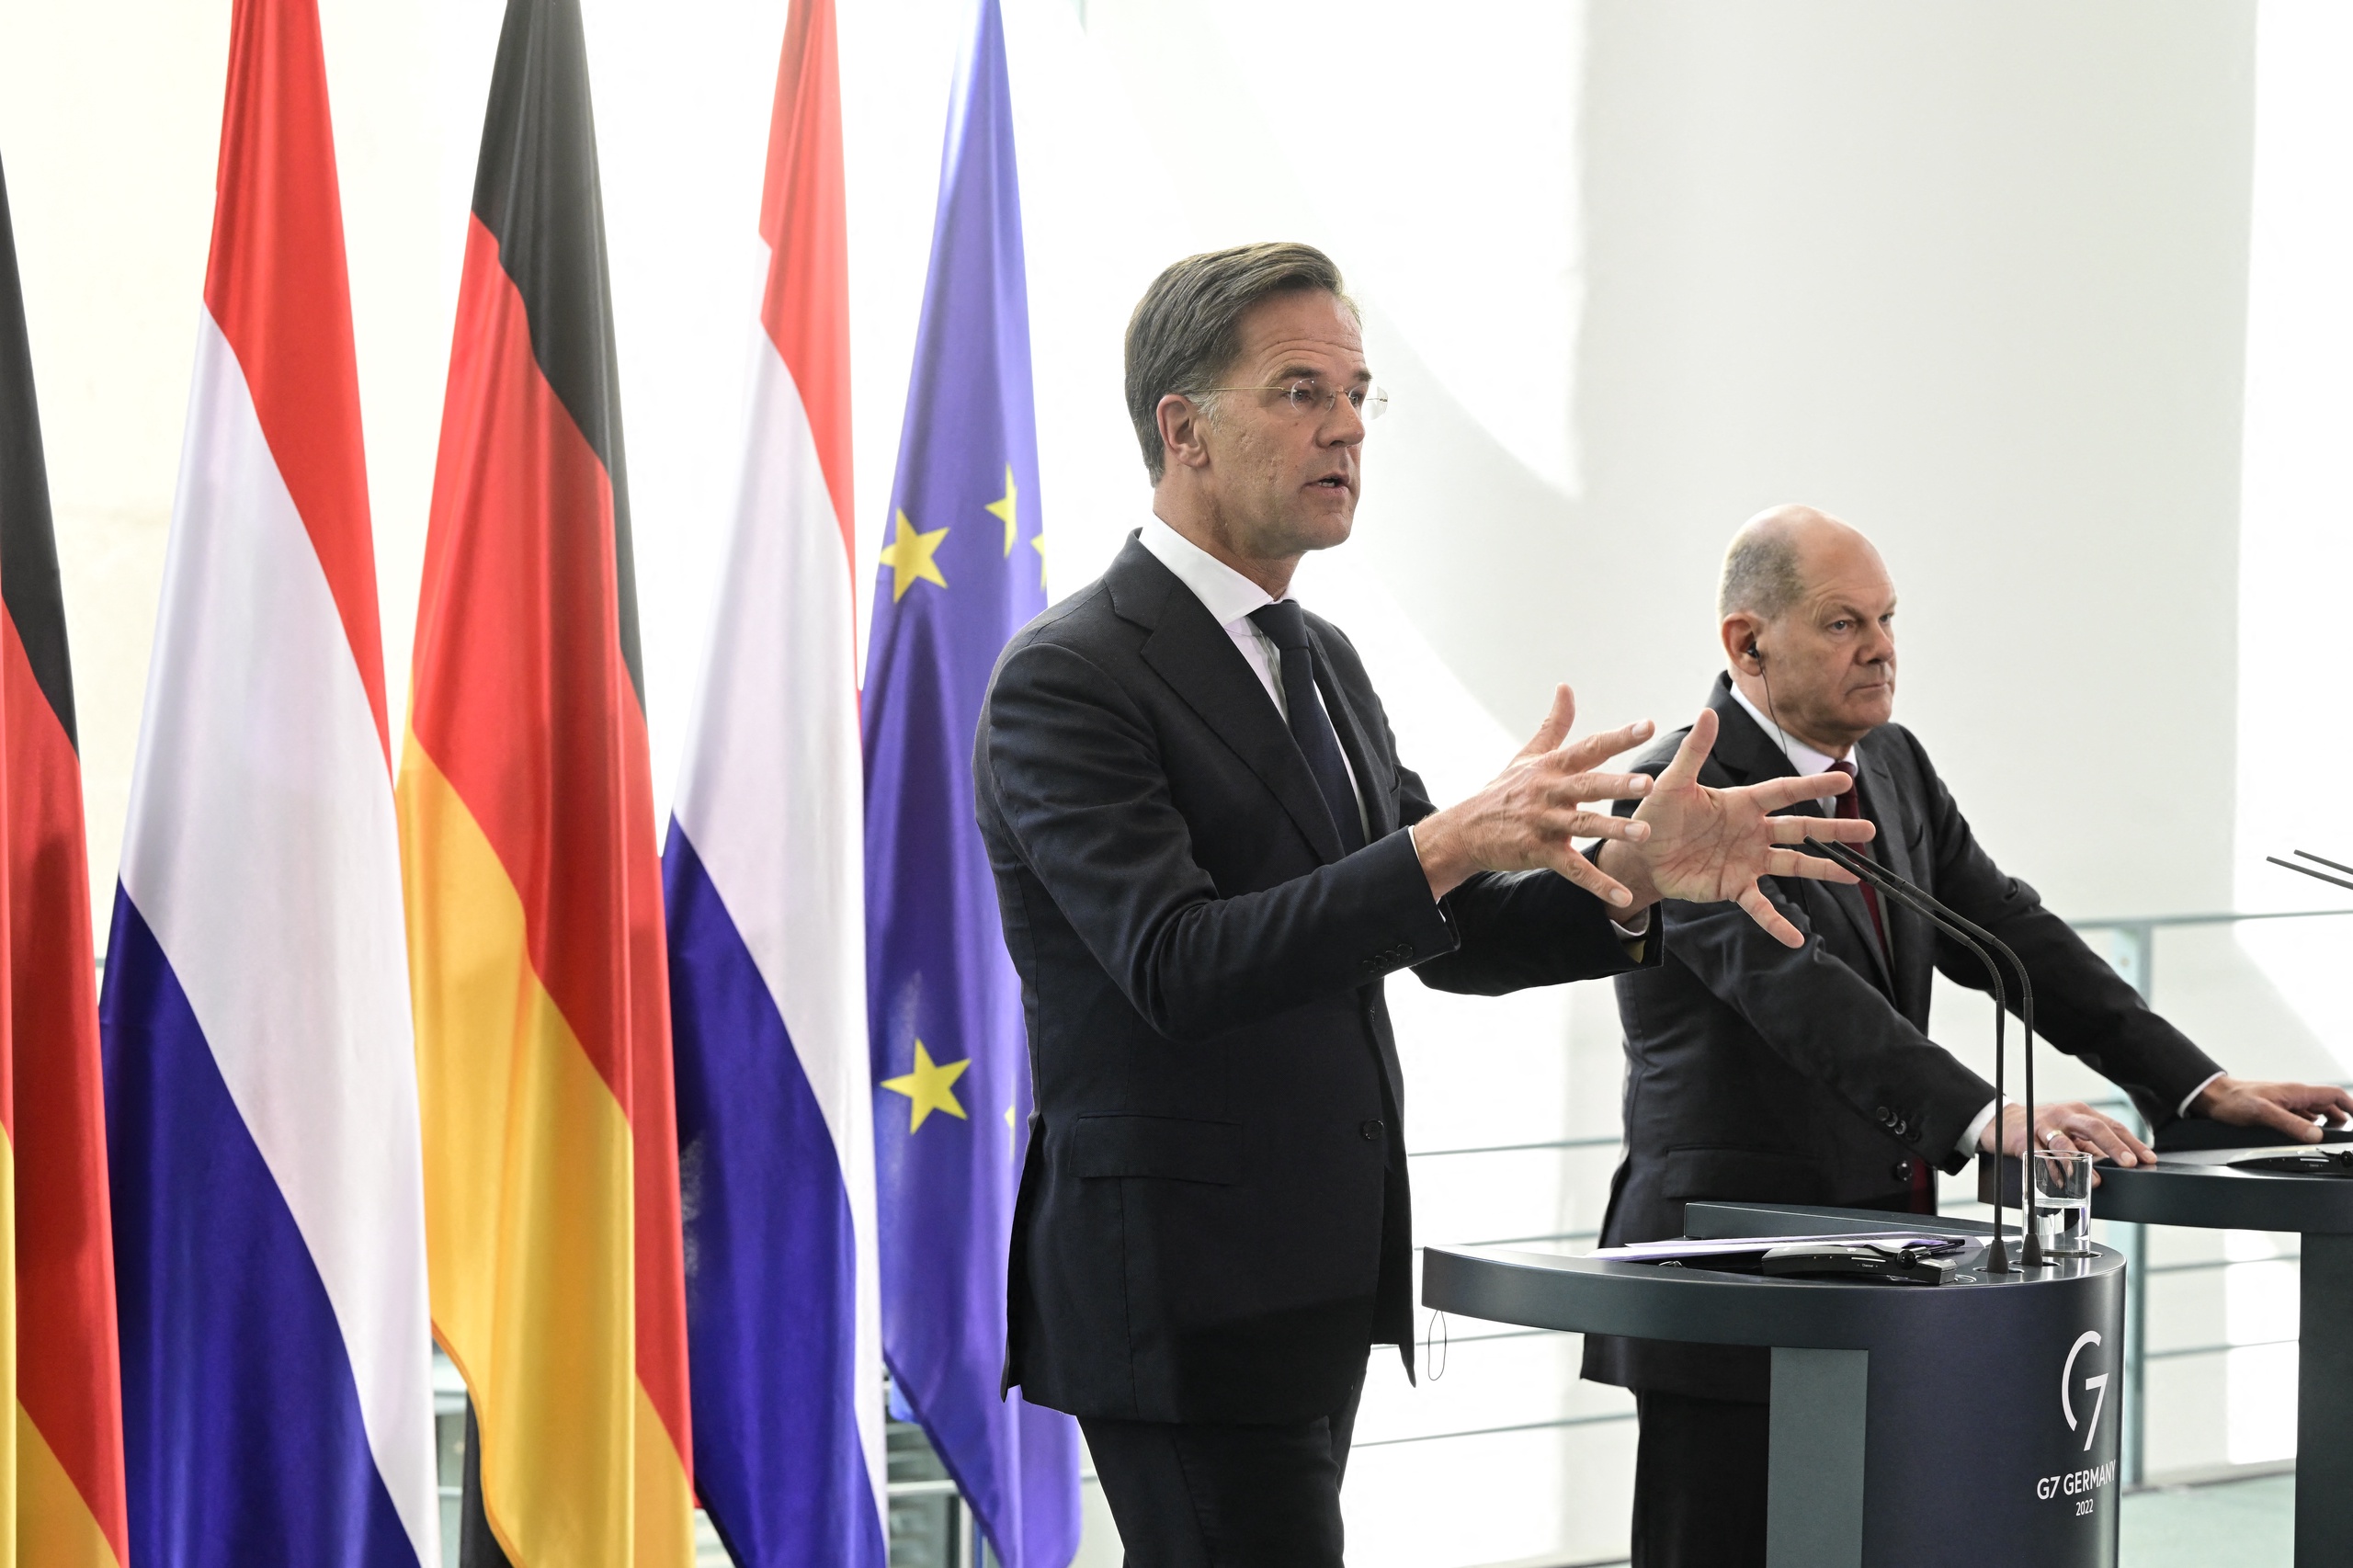 Nederland en Duitsland willen geen Europese maximumprijs voor gas, dat komt ze nu op verwijten van egoïsme en solisme te staan